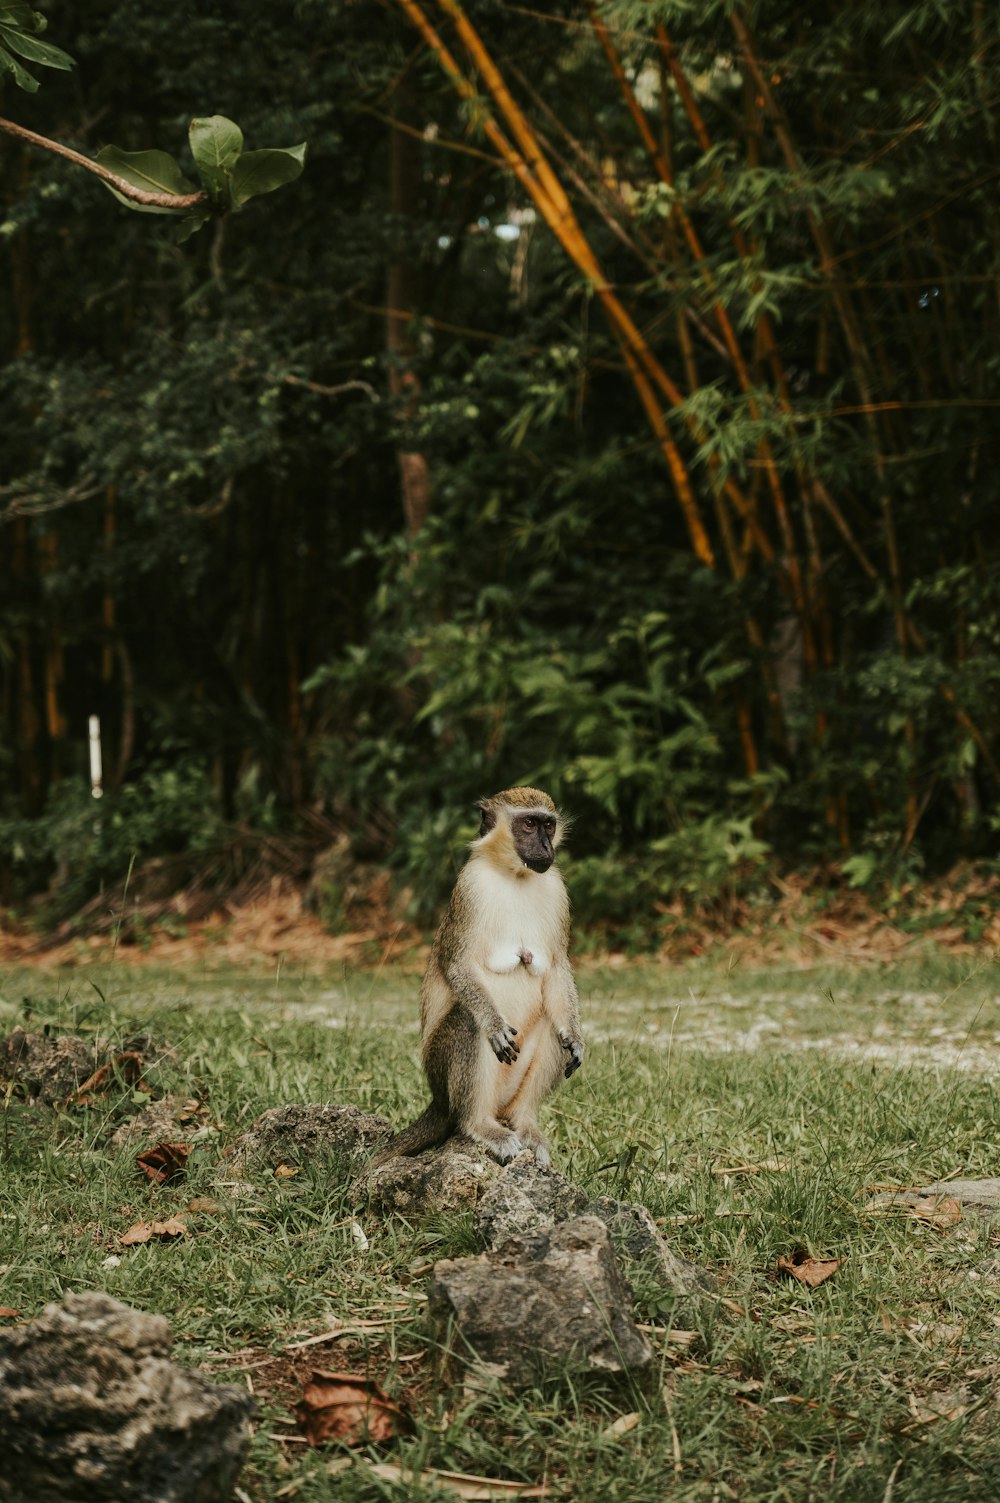 풀밭의 바위 위에 앉아 있는 원숭이